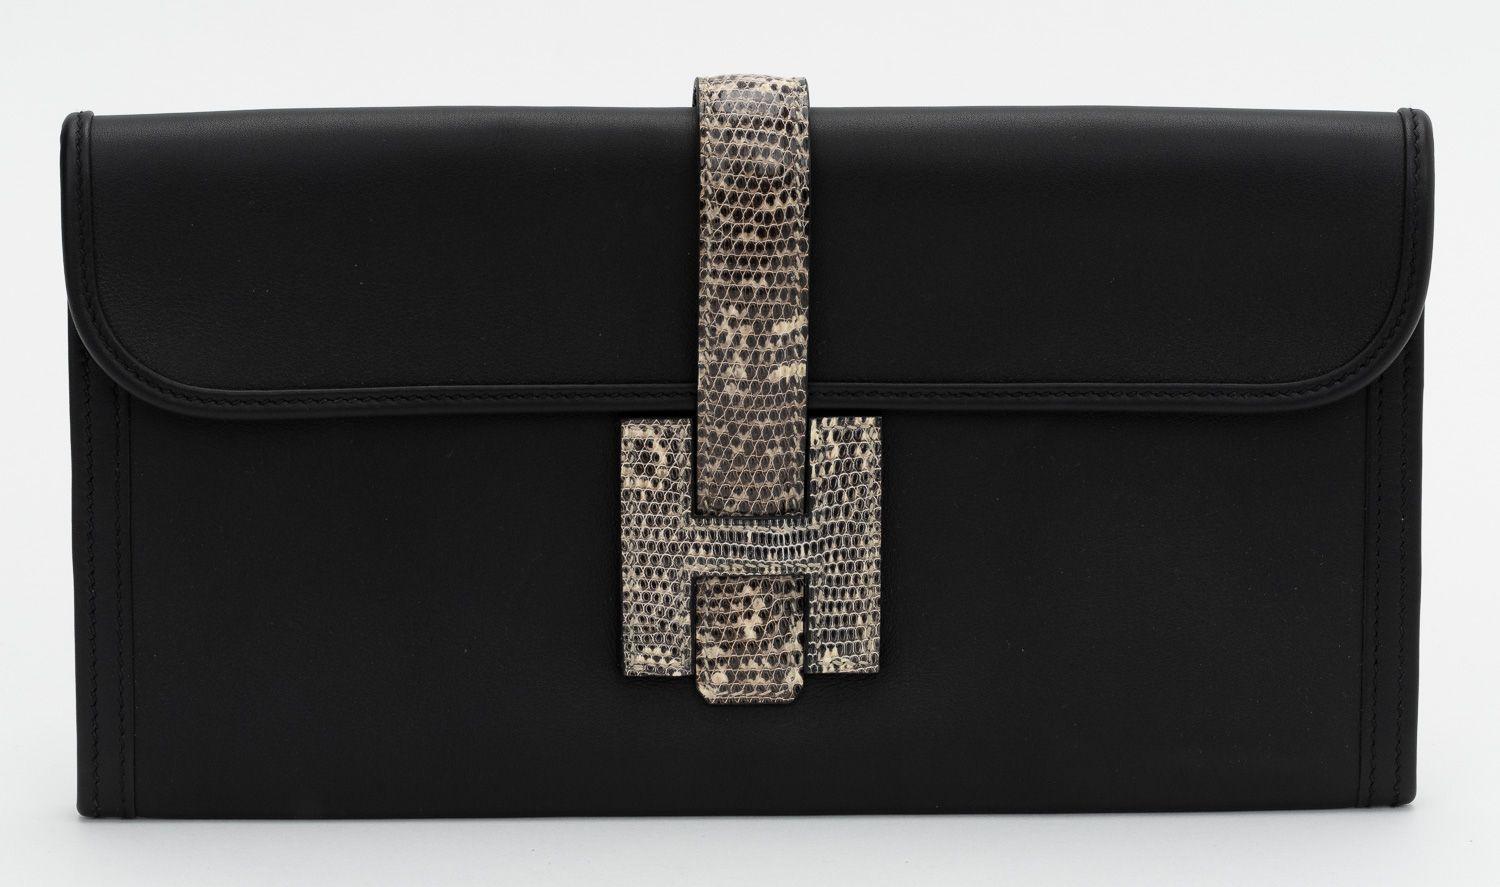 Hermès schwarze Leder 2020 Noir Swift Ombre Varanus Salvator Lizard Jige Elan Touch 29 Clutch Bag. Der Datumsstempel zeigt ein D. Die Tasche kommt mit dem Booklet und der Originalverpackung. Keine Zitate, kein internationaler Versand.